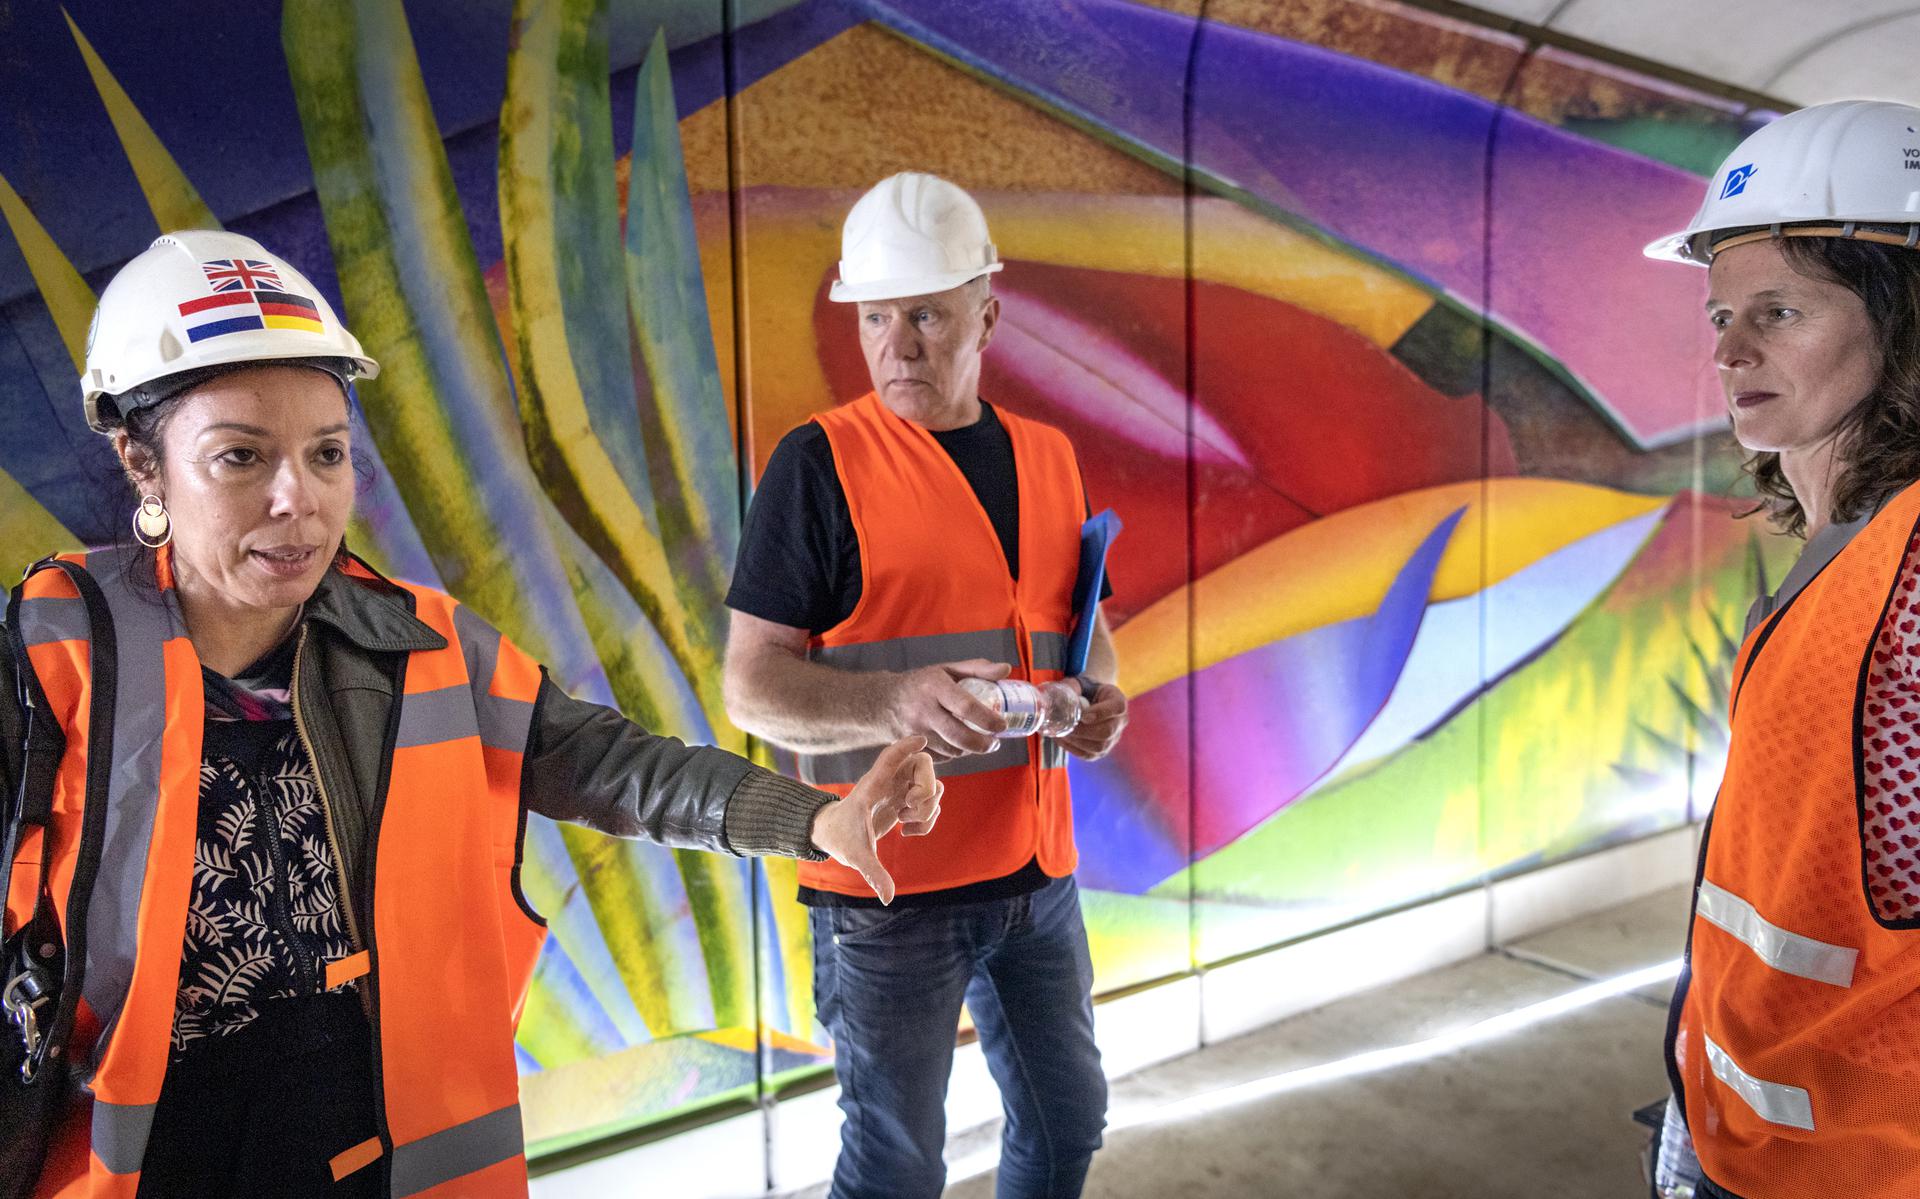 Kunstenares Hadassa Emmerich (links) laat haar gigantische muurschildering op folie afdrukken door Egbert Ipema van SignUp. Samen met Nicoline Wijnja van Kunstpunt bekijken ze het eerste deel in de fietstunnel bij openluchtbad De Papiermolen. 